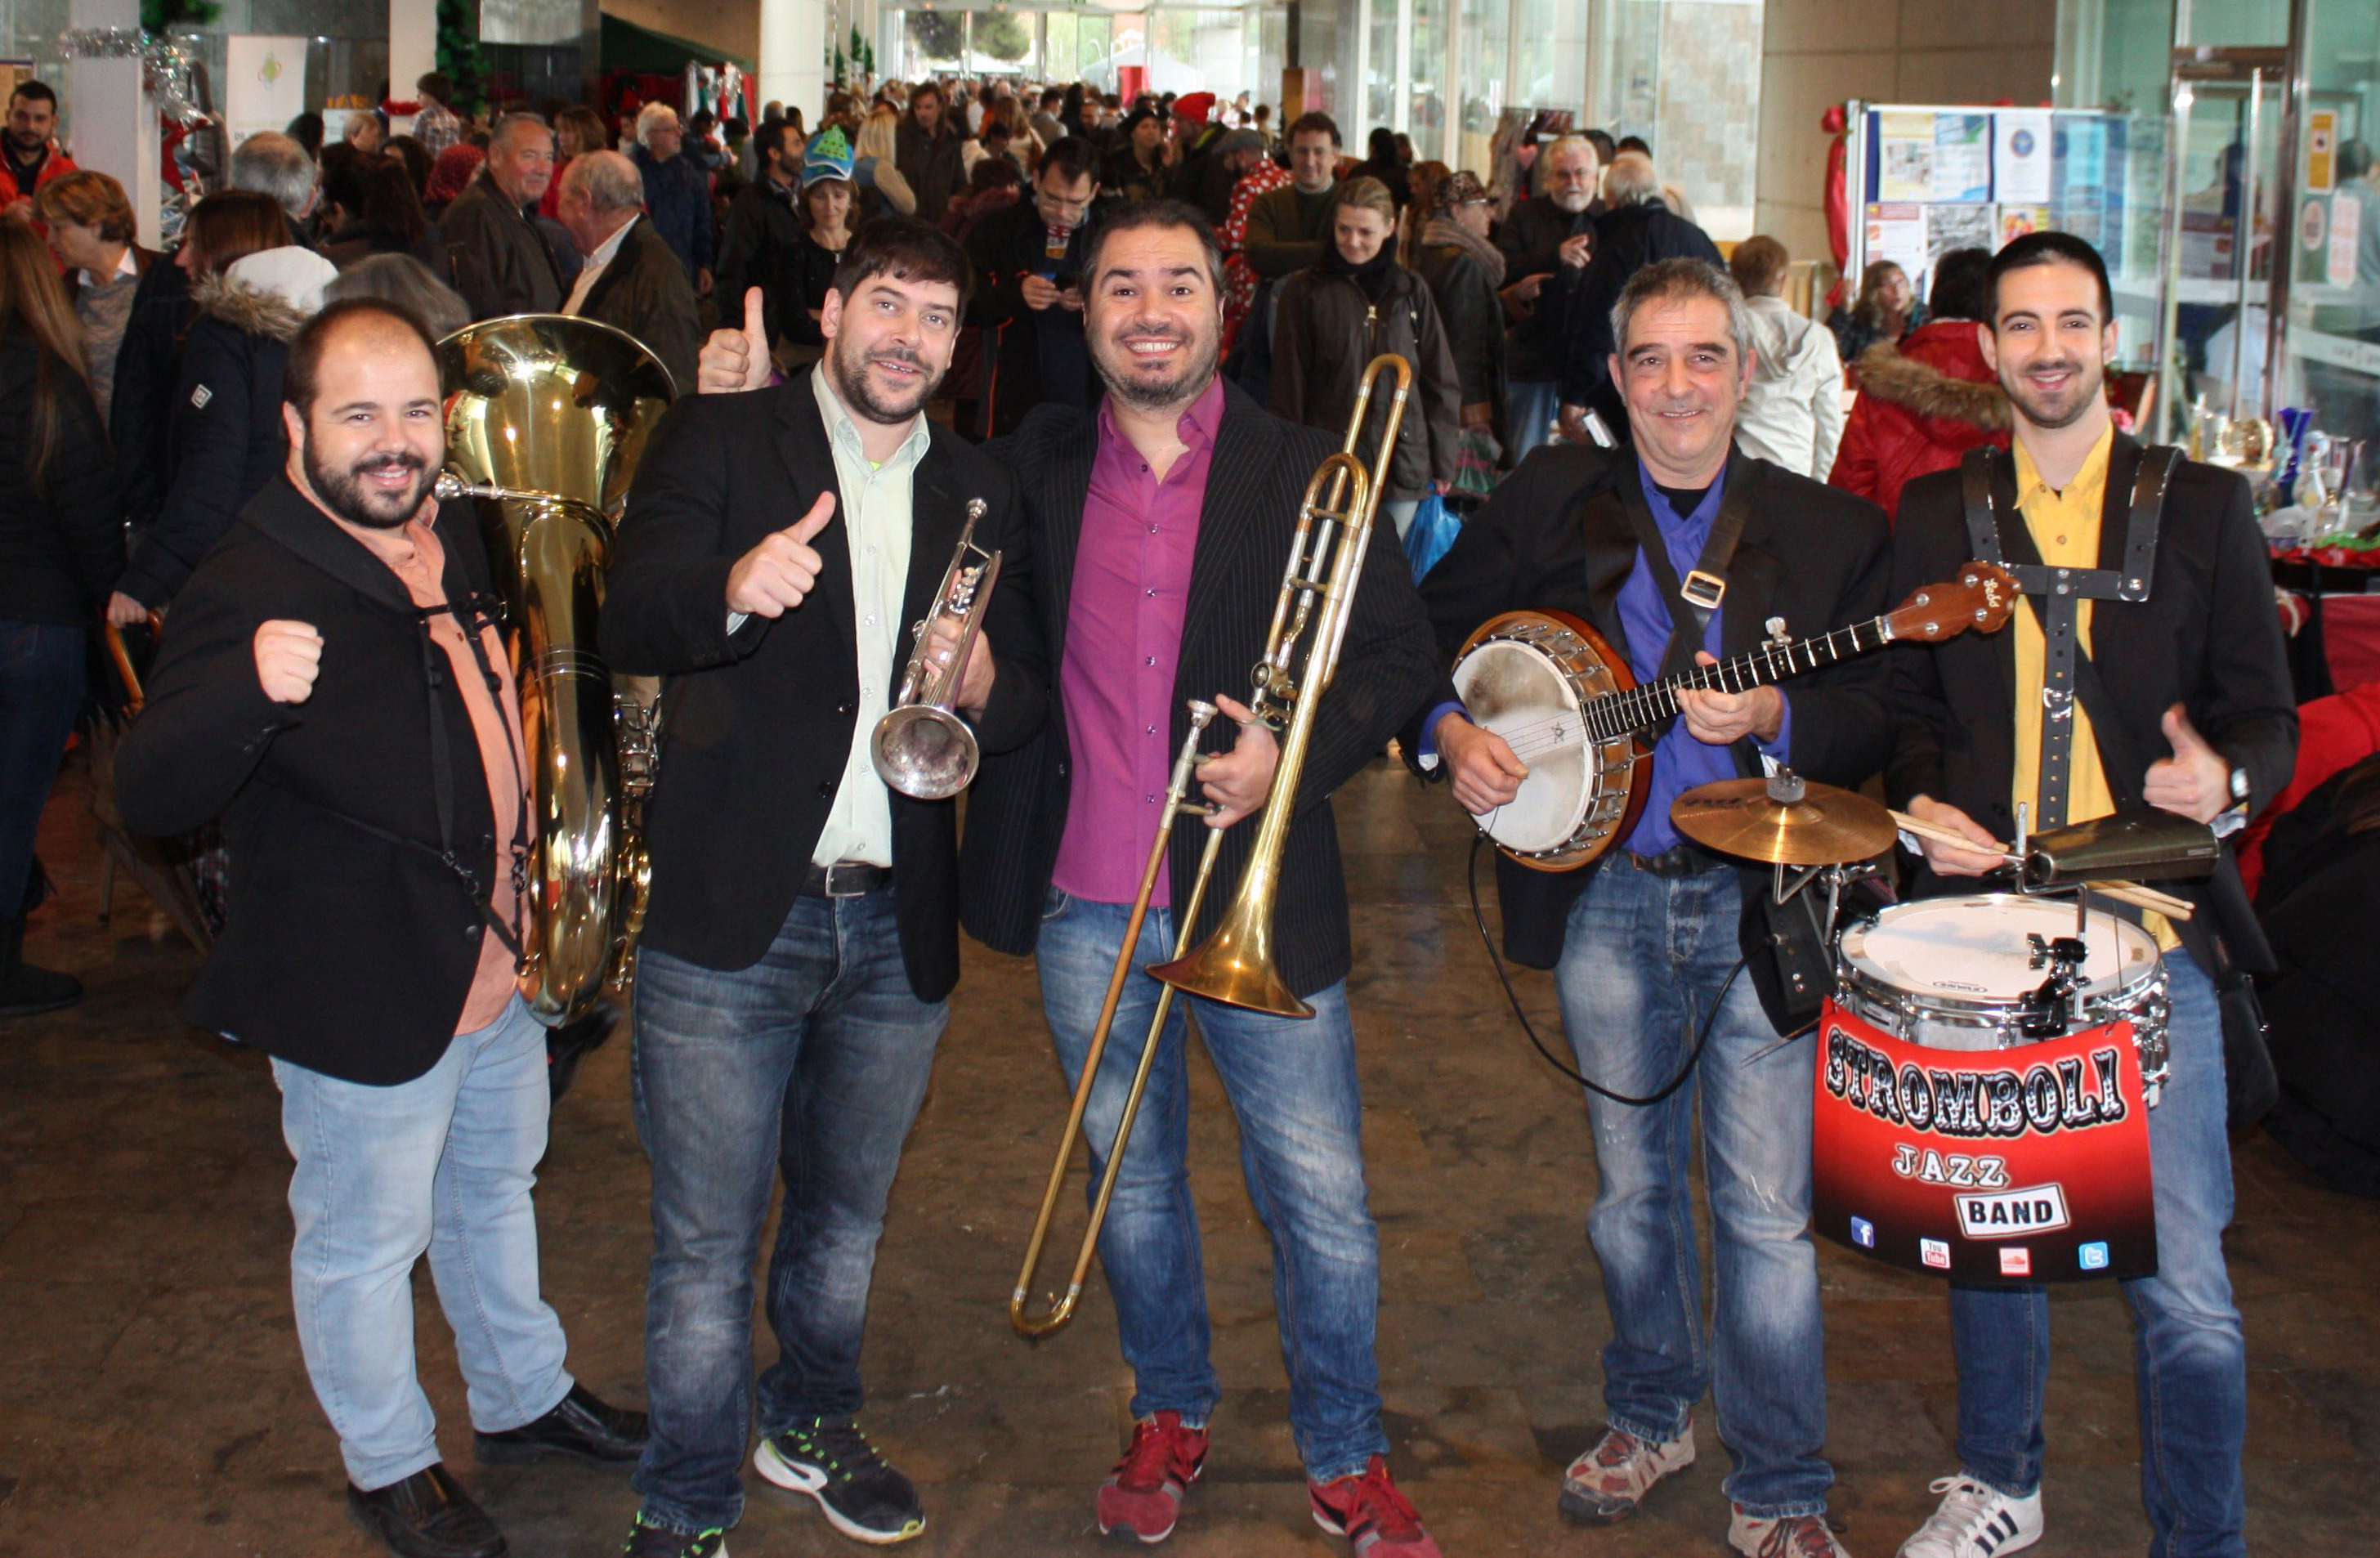 Stromboli Jazz Band